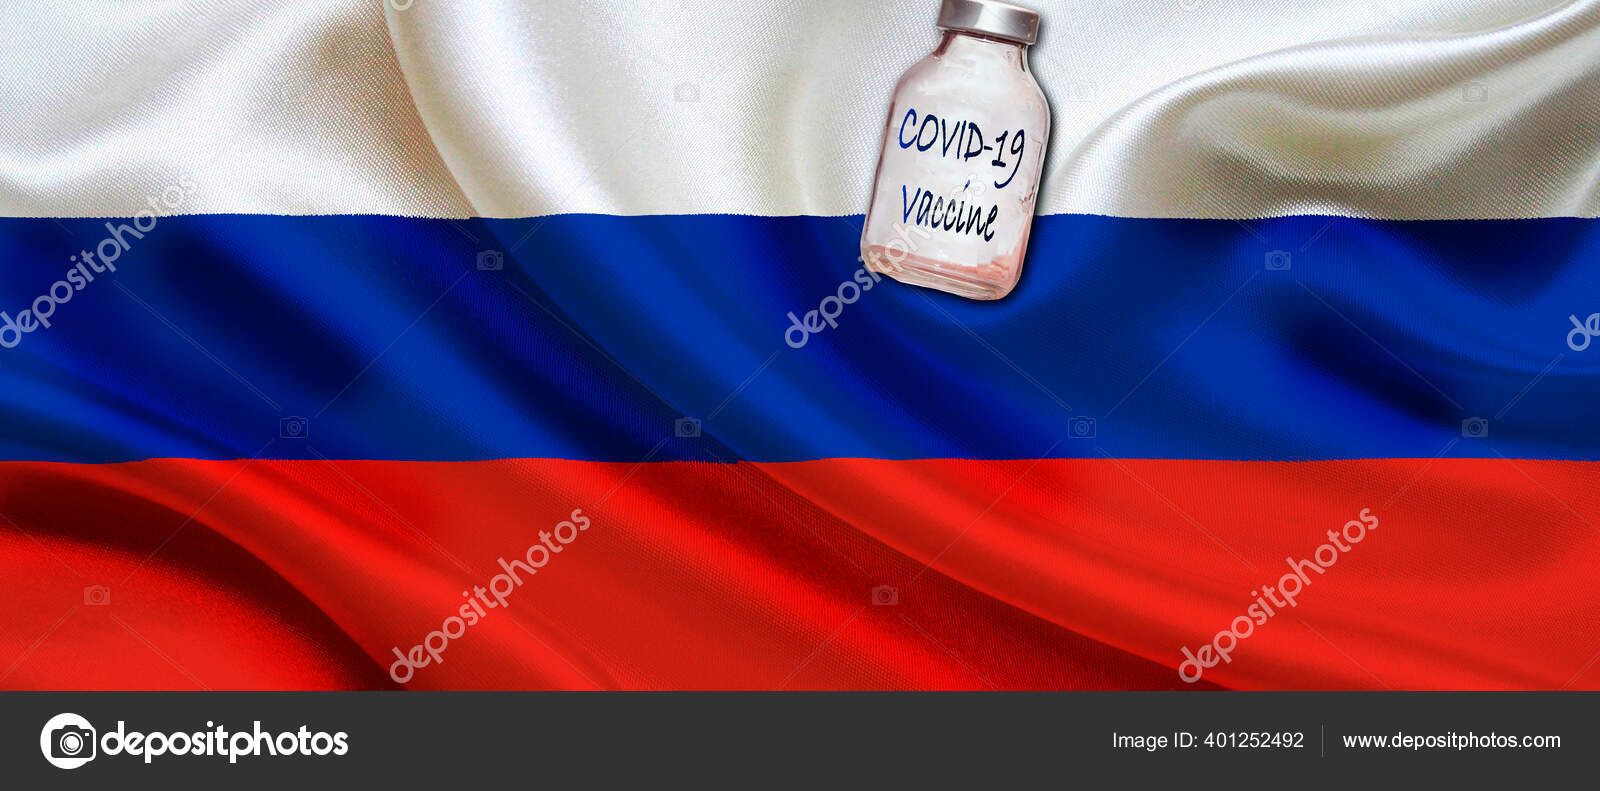 Verres à vodka Russie aux couleurs du drapeau russe